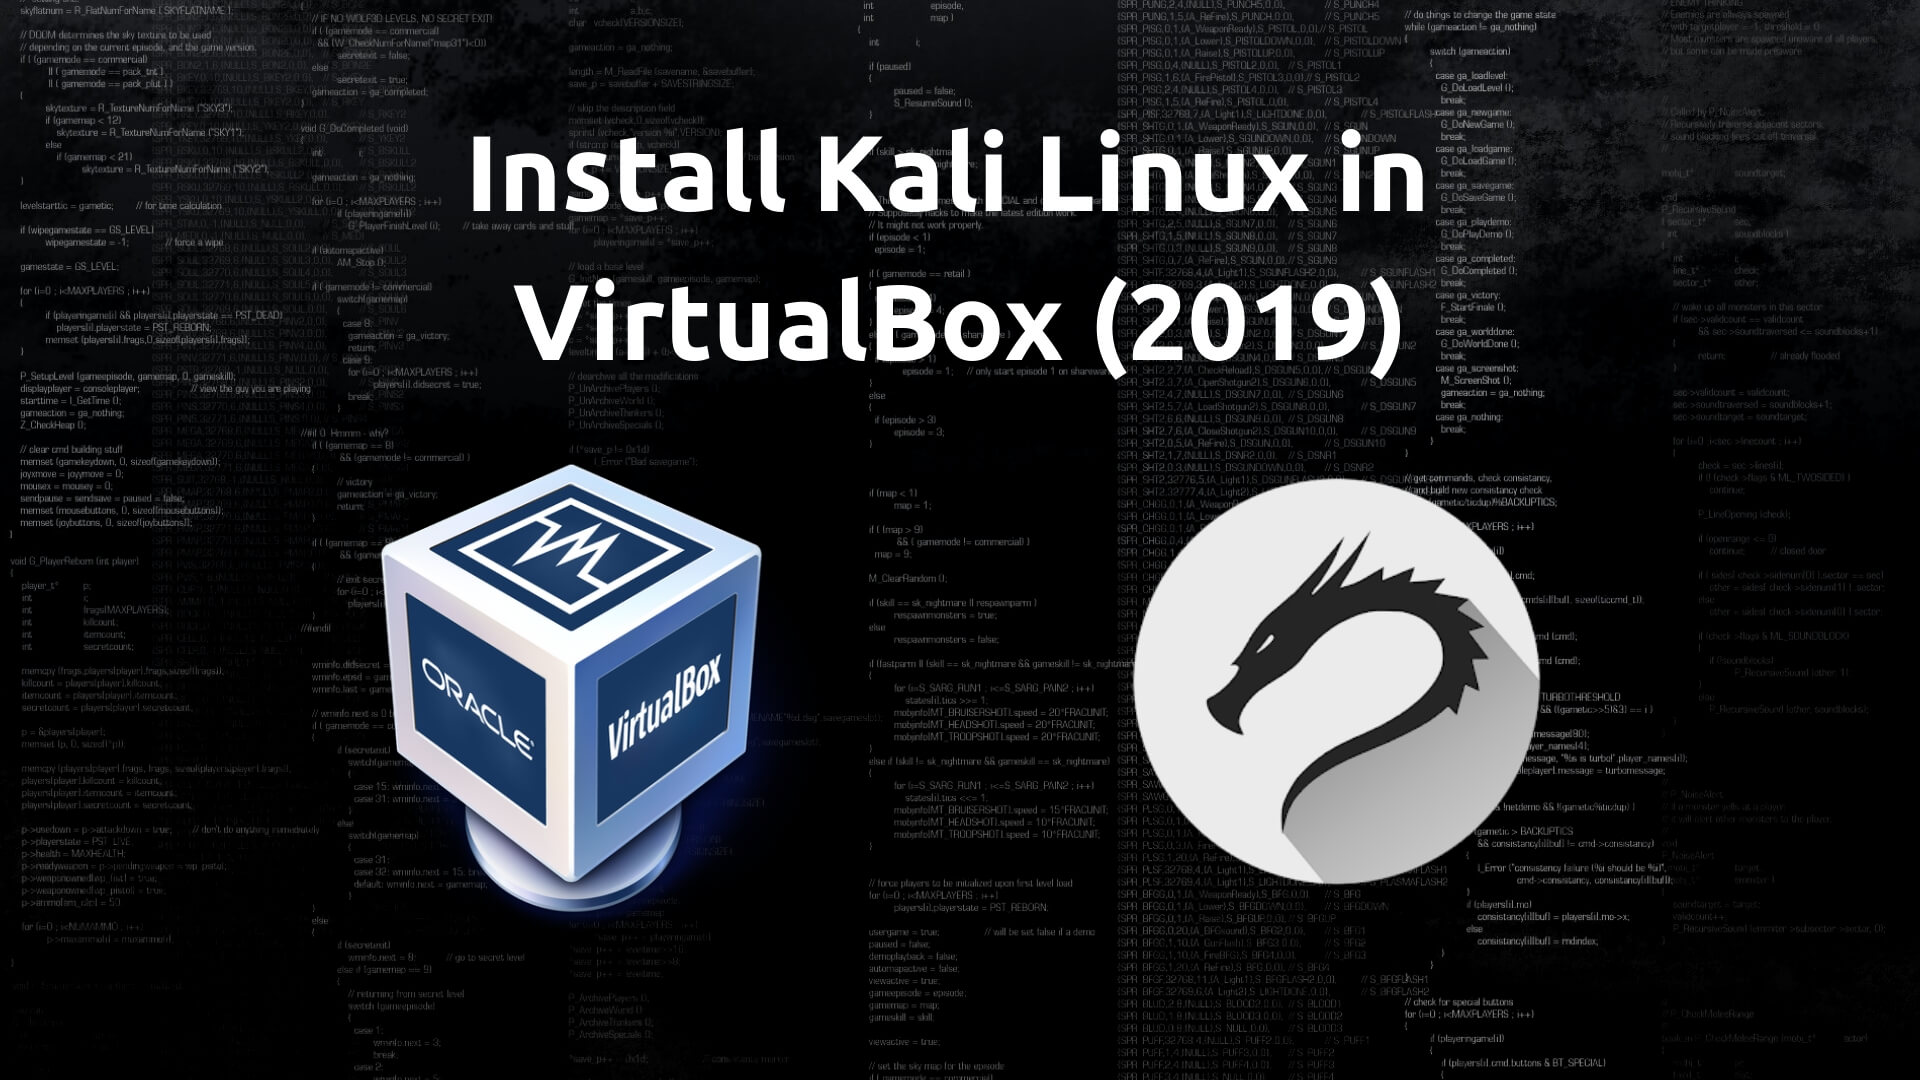 kali linux virtualbox image